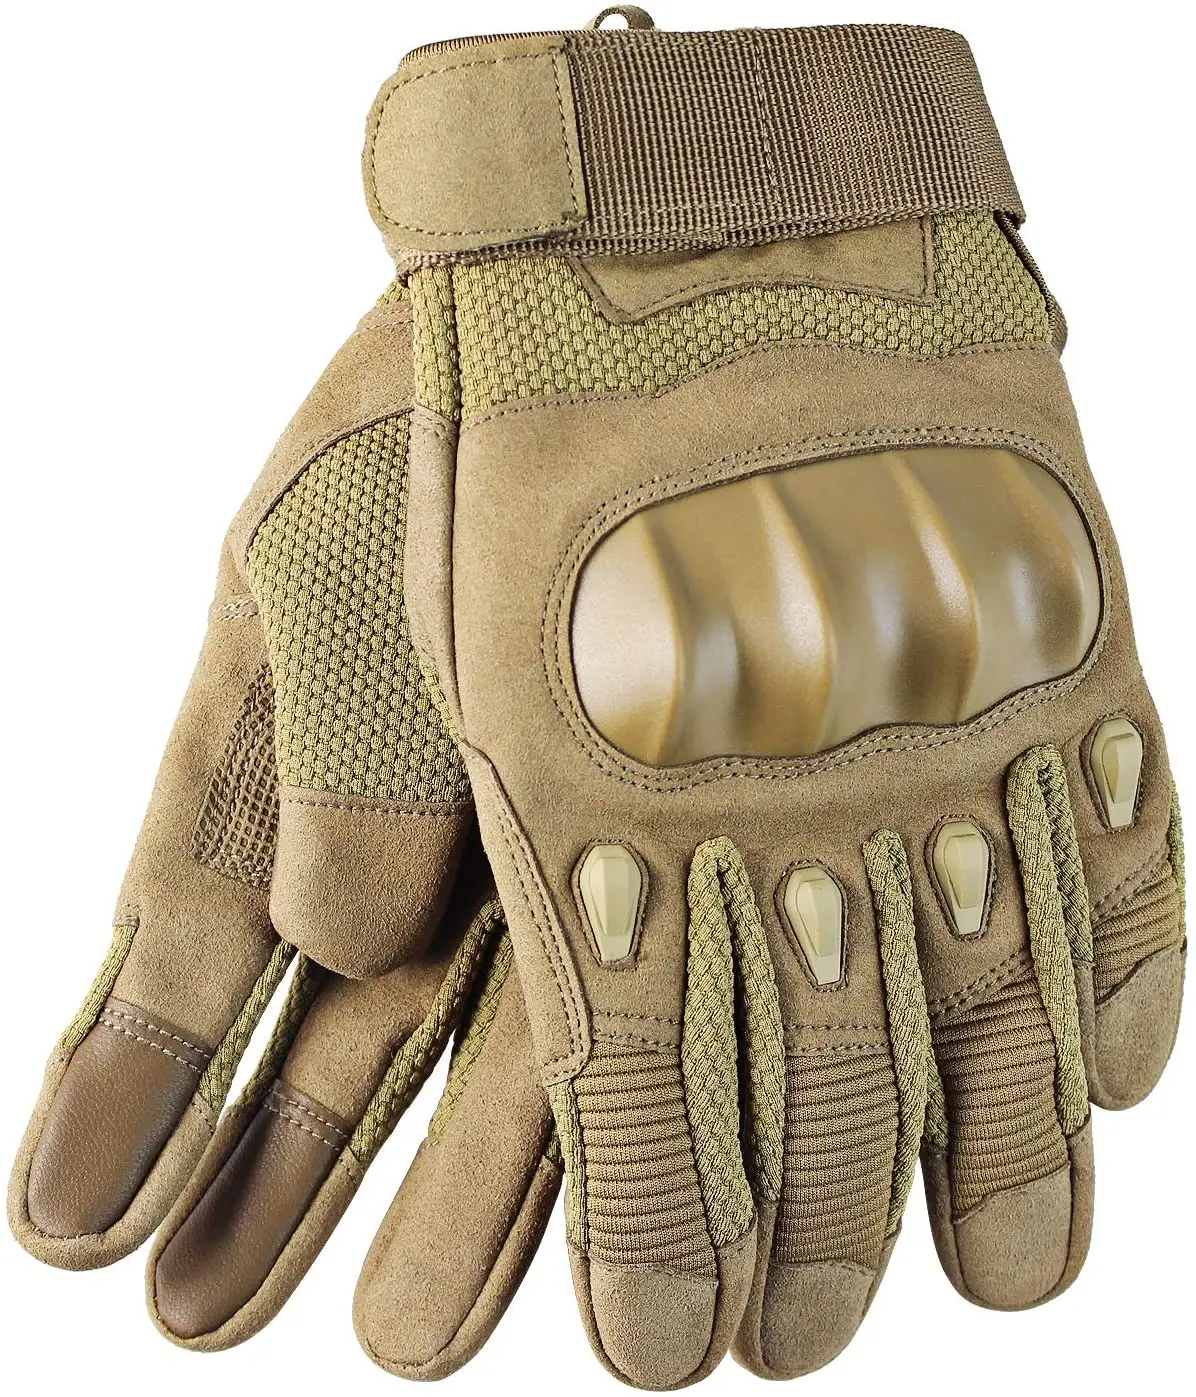 Motosiklet sürme koruma yarış motosiklet eldivenleri için açık spor yüksek kalite deri motosiklet eldivenleri özel PK